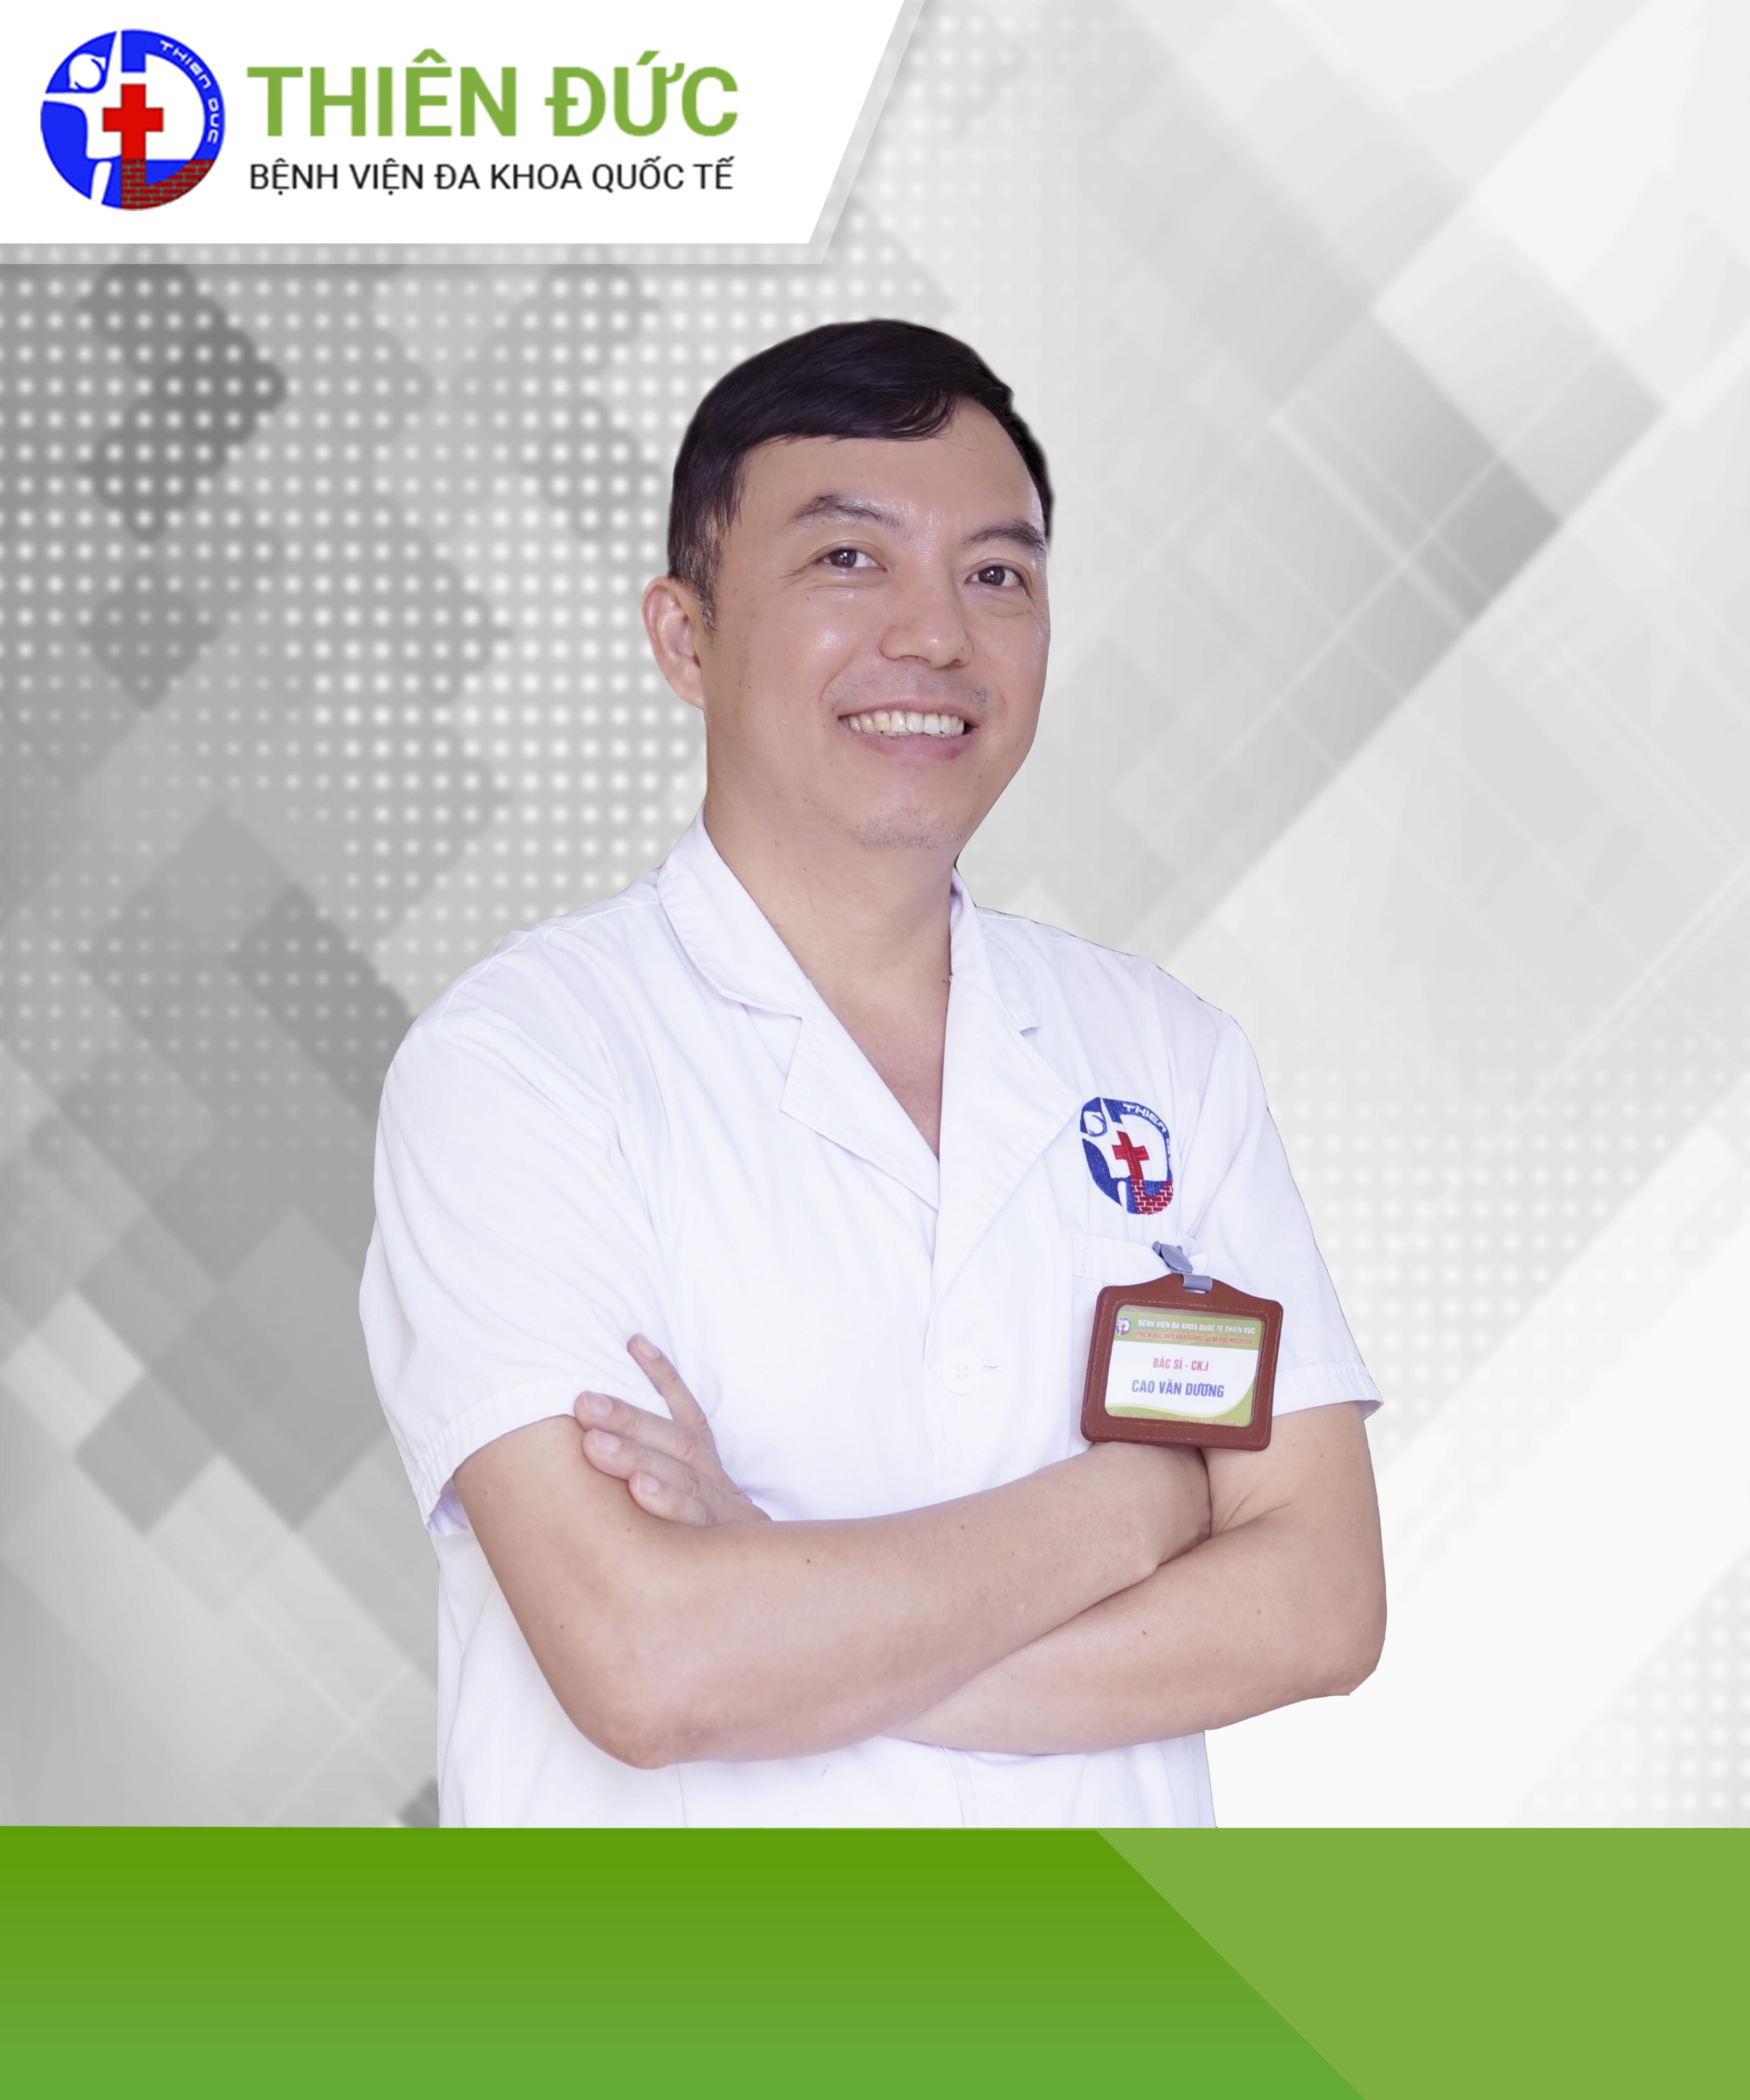 Bác sĩ Cao Văn Dương